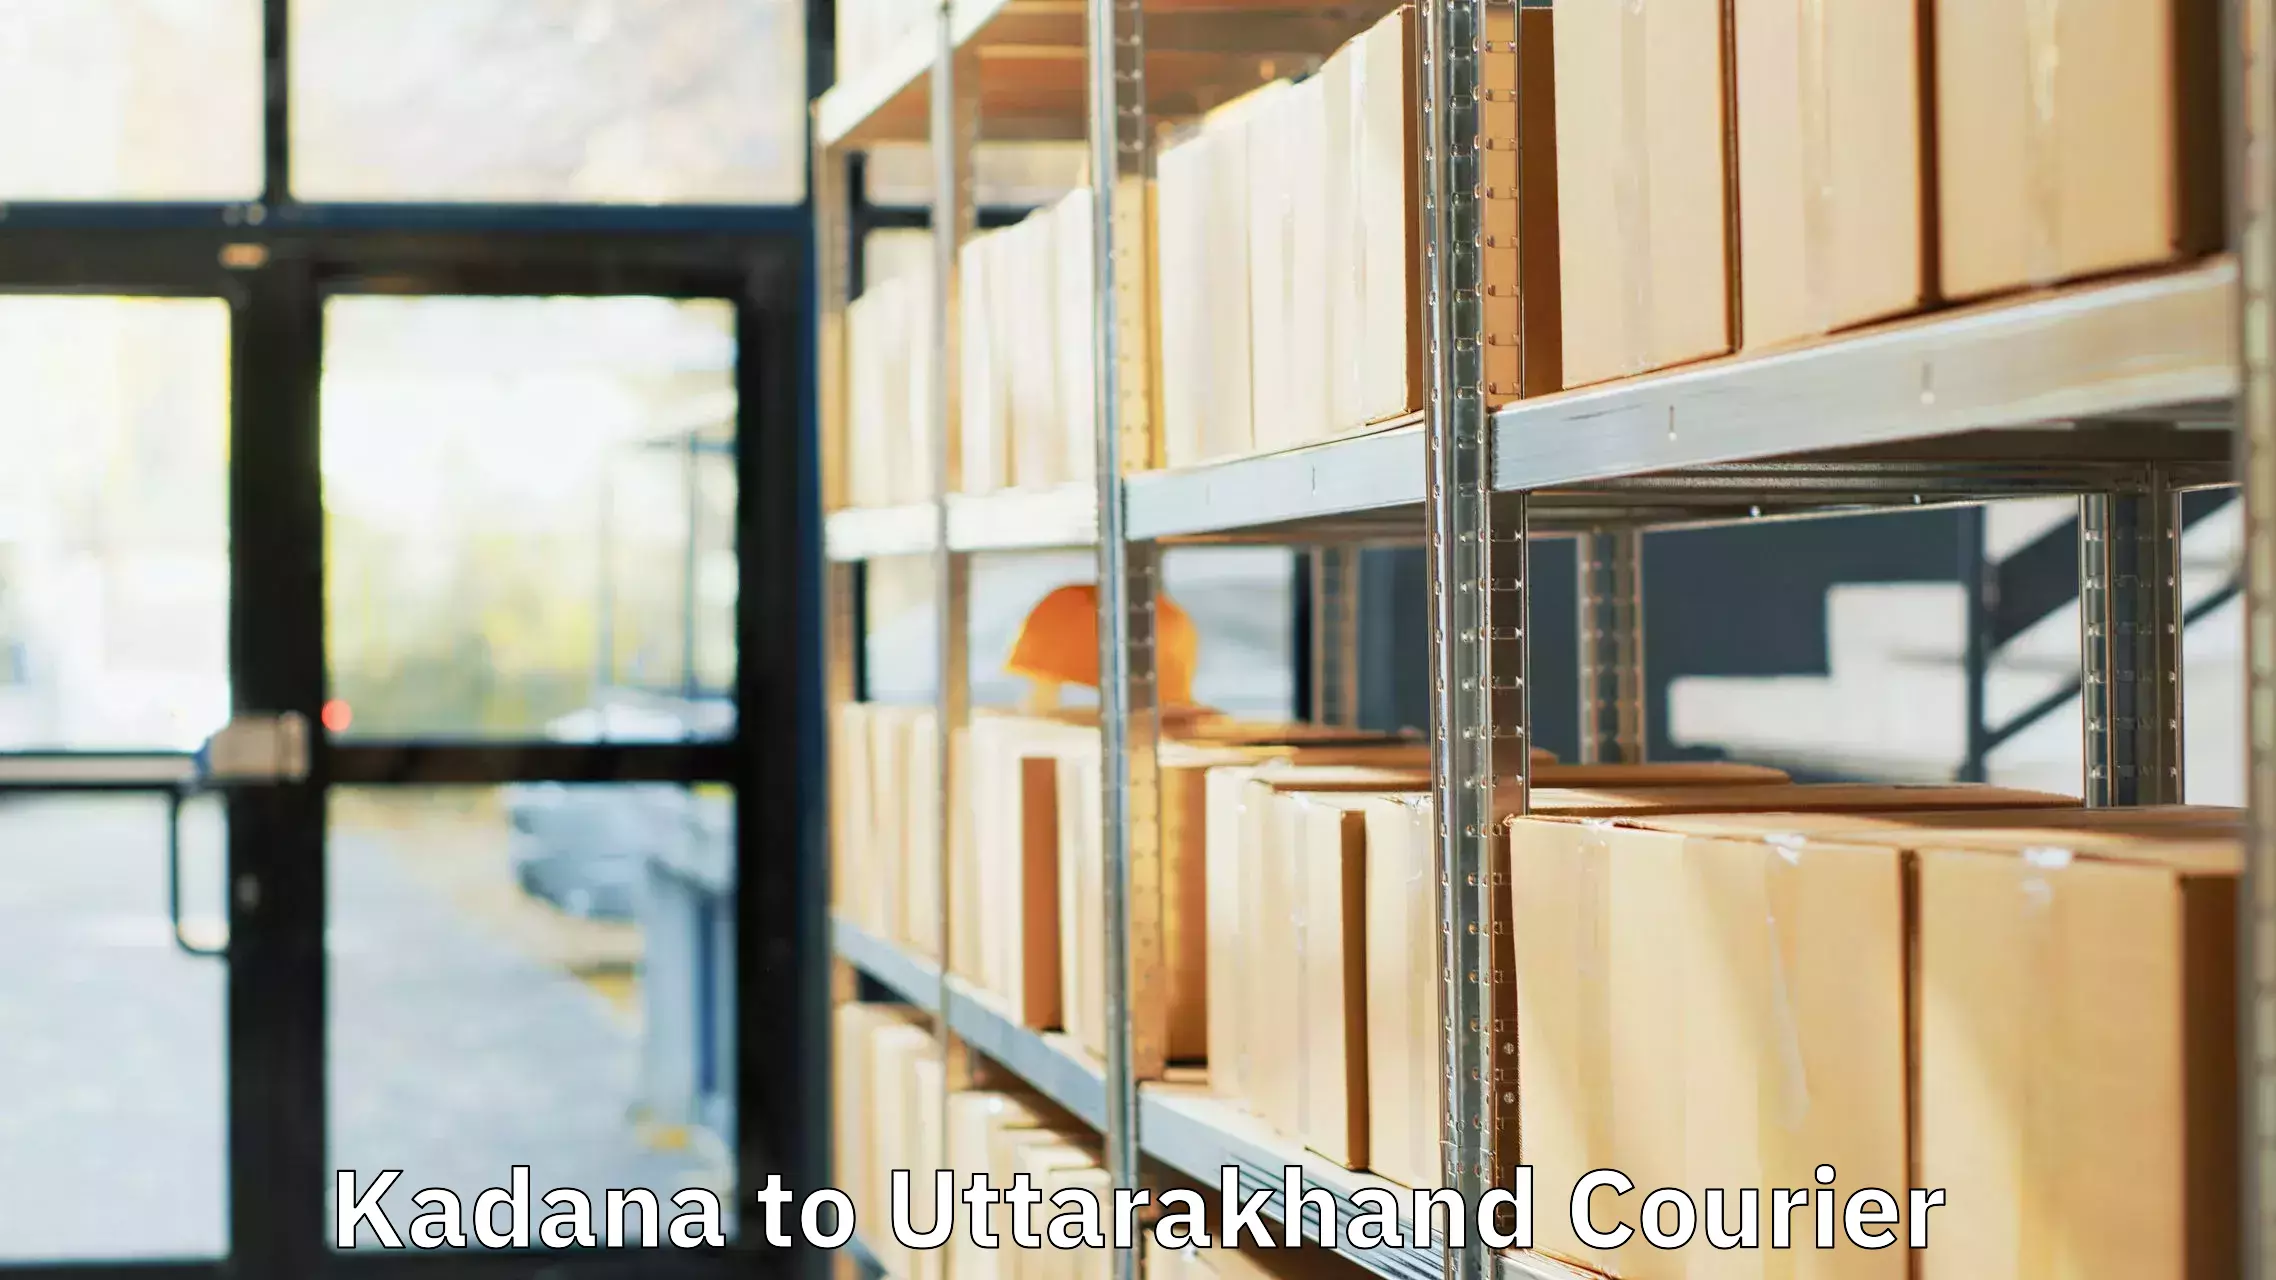 Baggage shipping experts Kadana to Uttarakhand